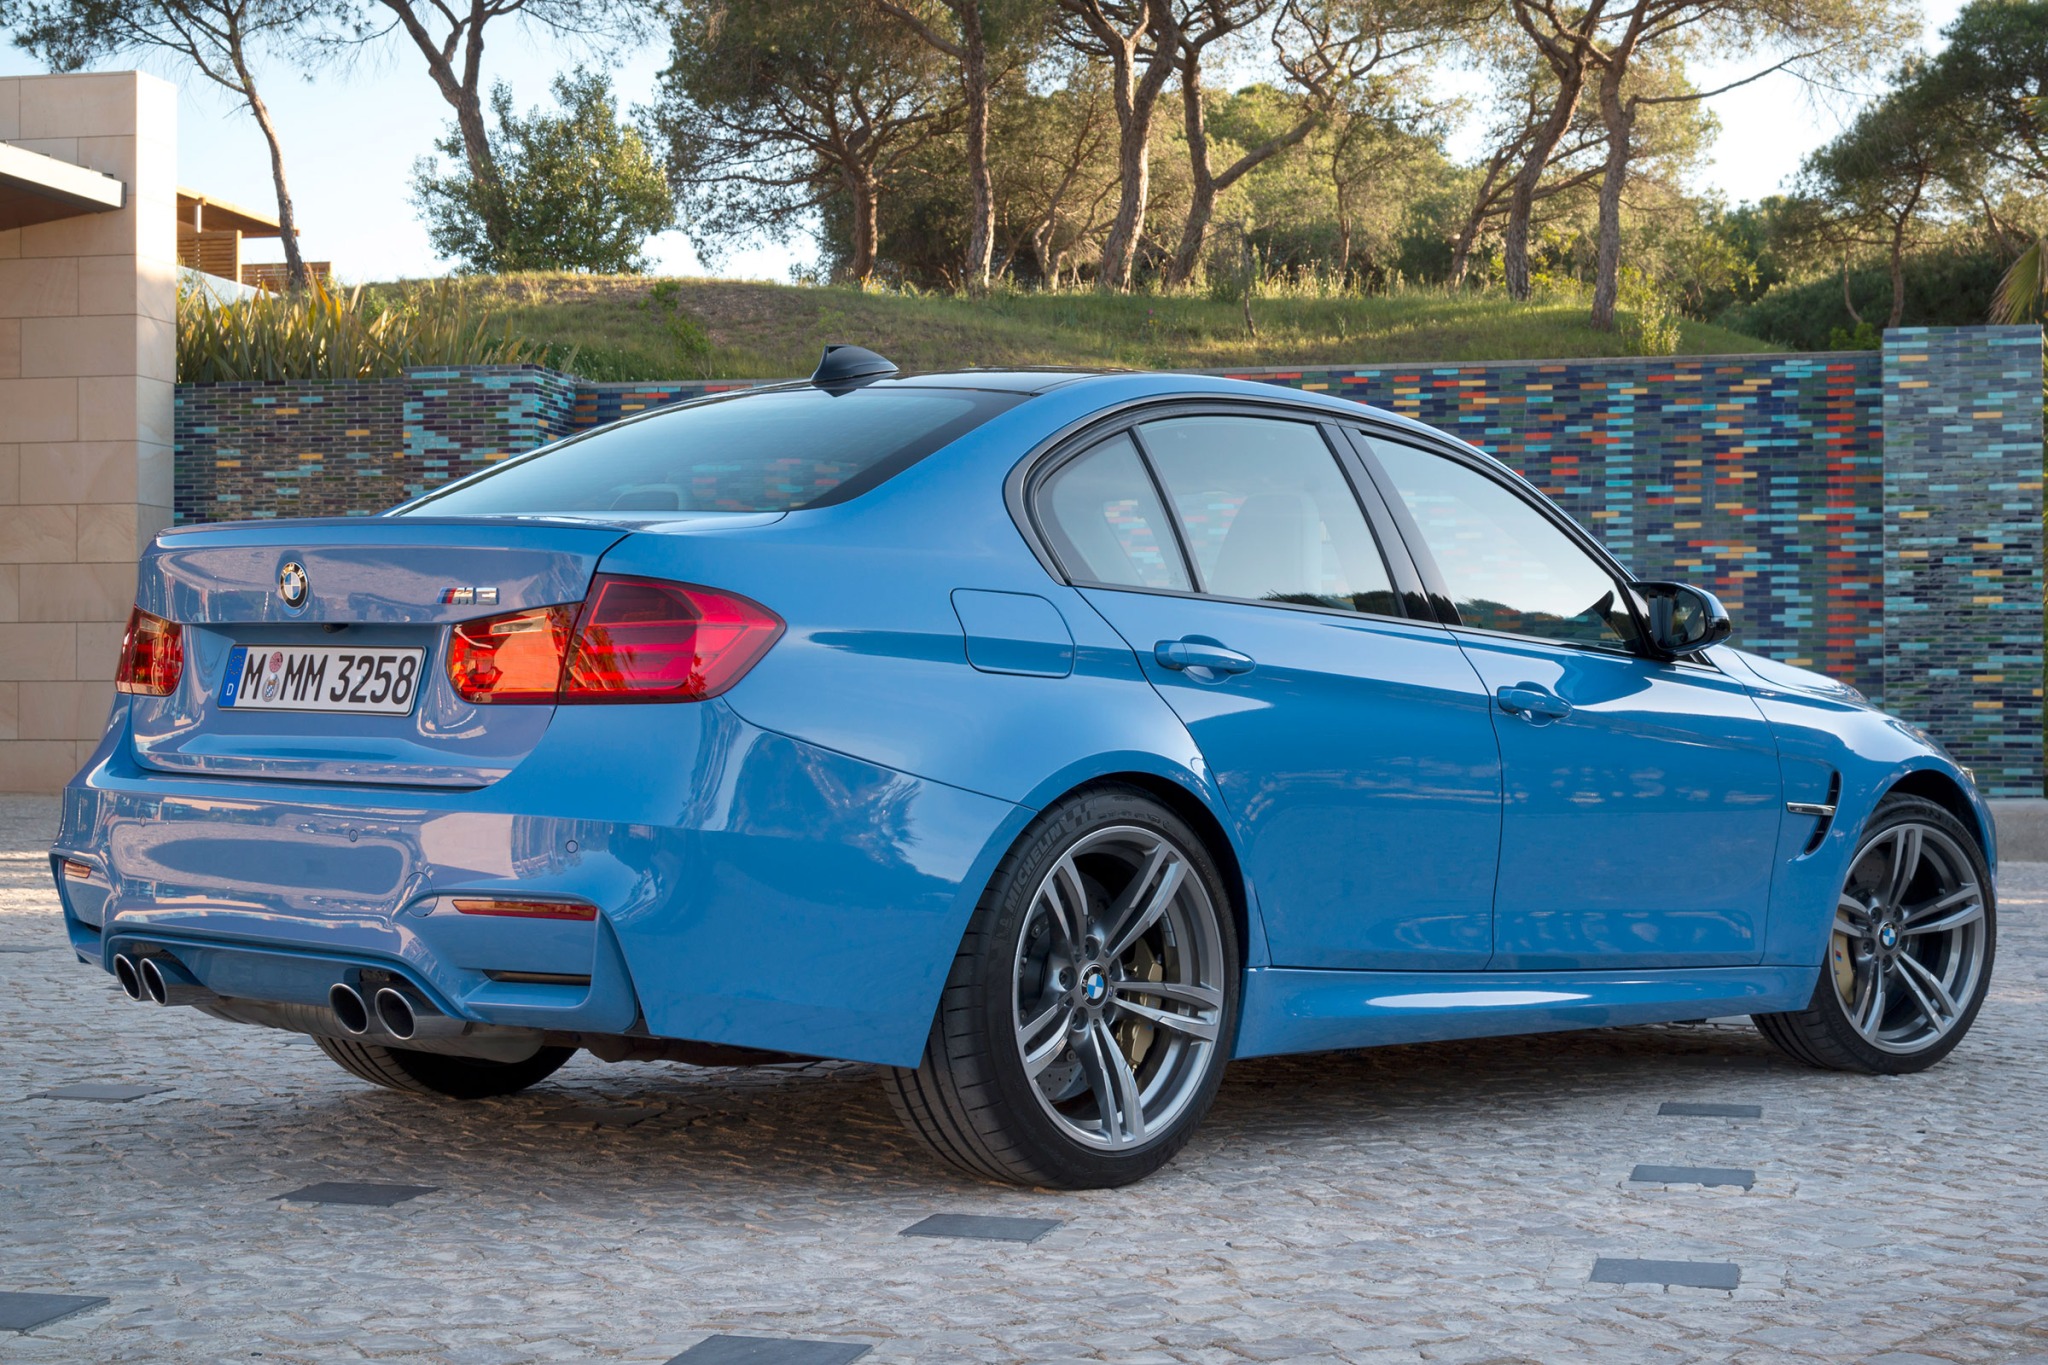 Bmw m sport pro. BMW m3 f80 sedan. BMW m3 sedan 2015. BMW седан м3. BMW m3 f80 2014.